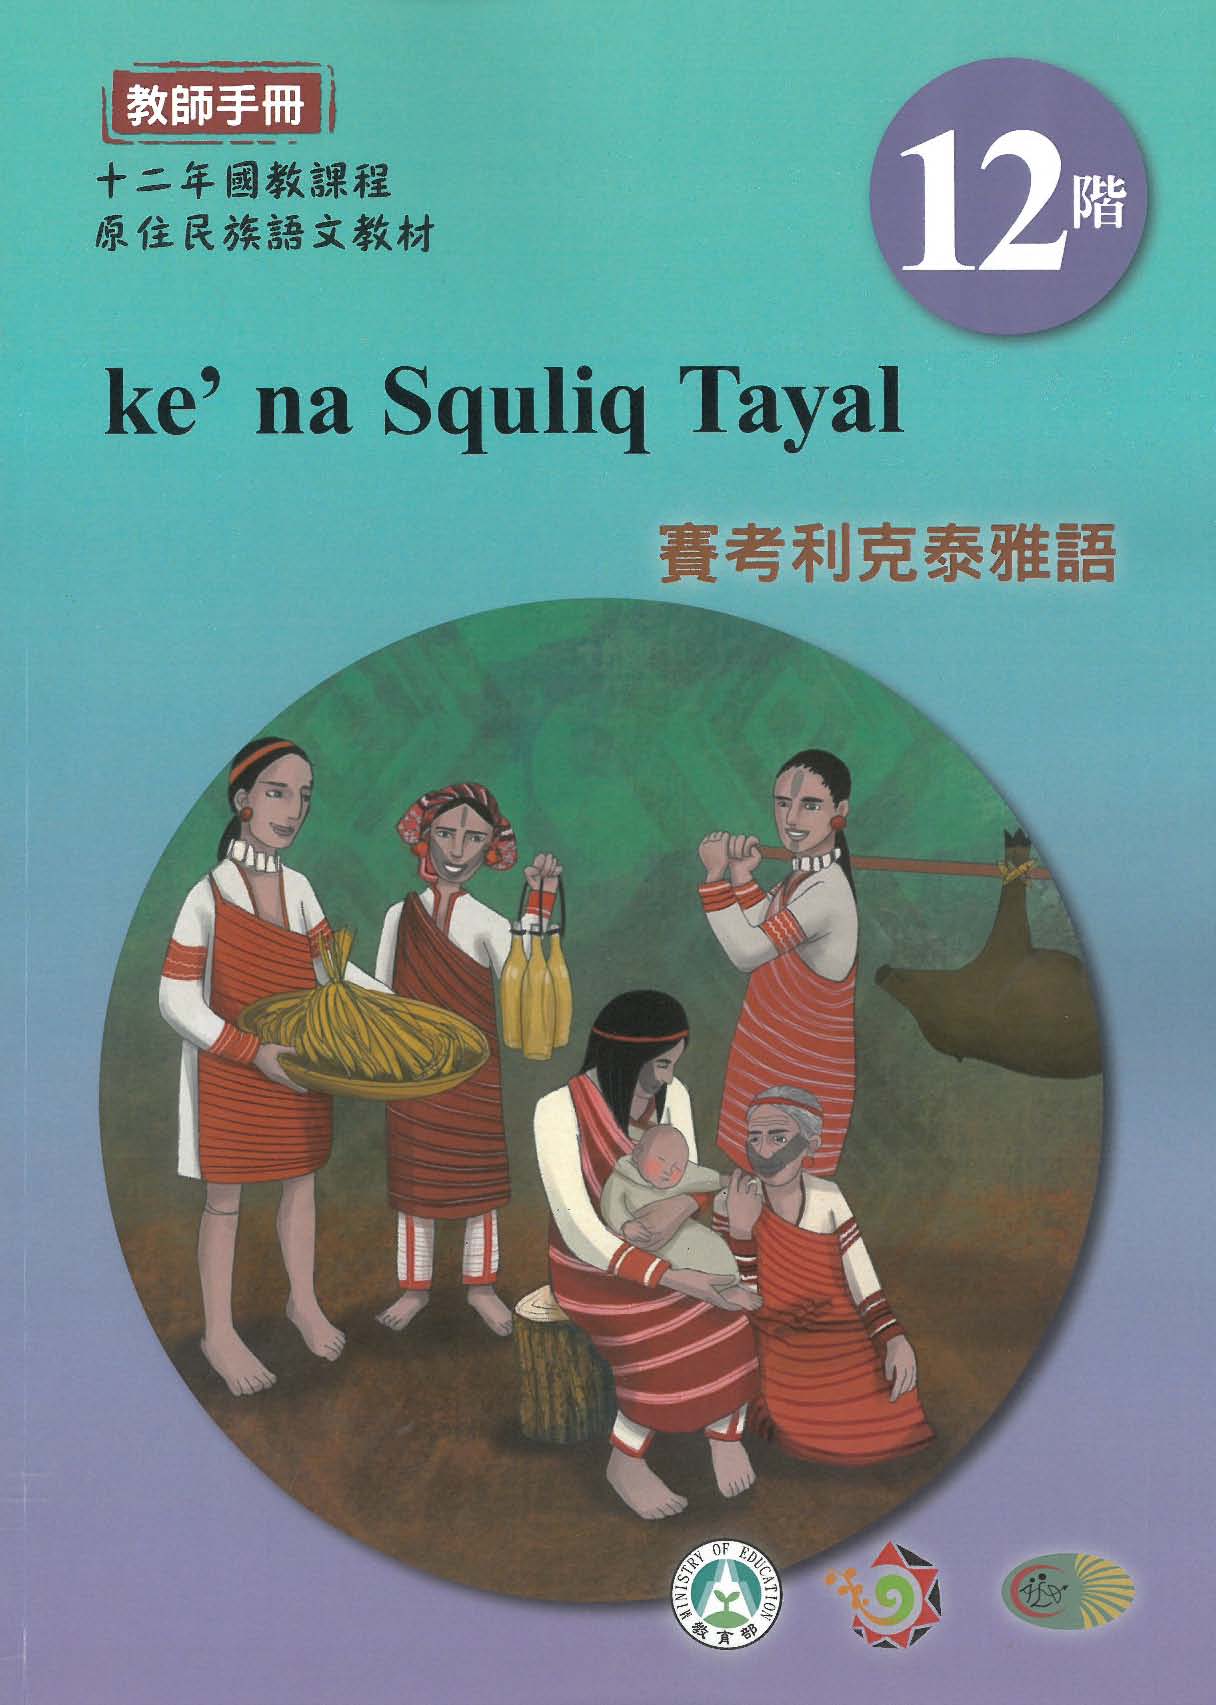 十二年國教原住民族語文教材 賽考利克泰雅語 教師手冊 第12階